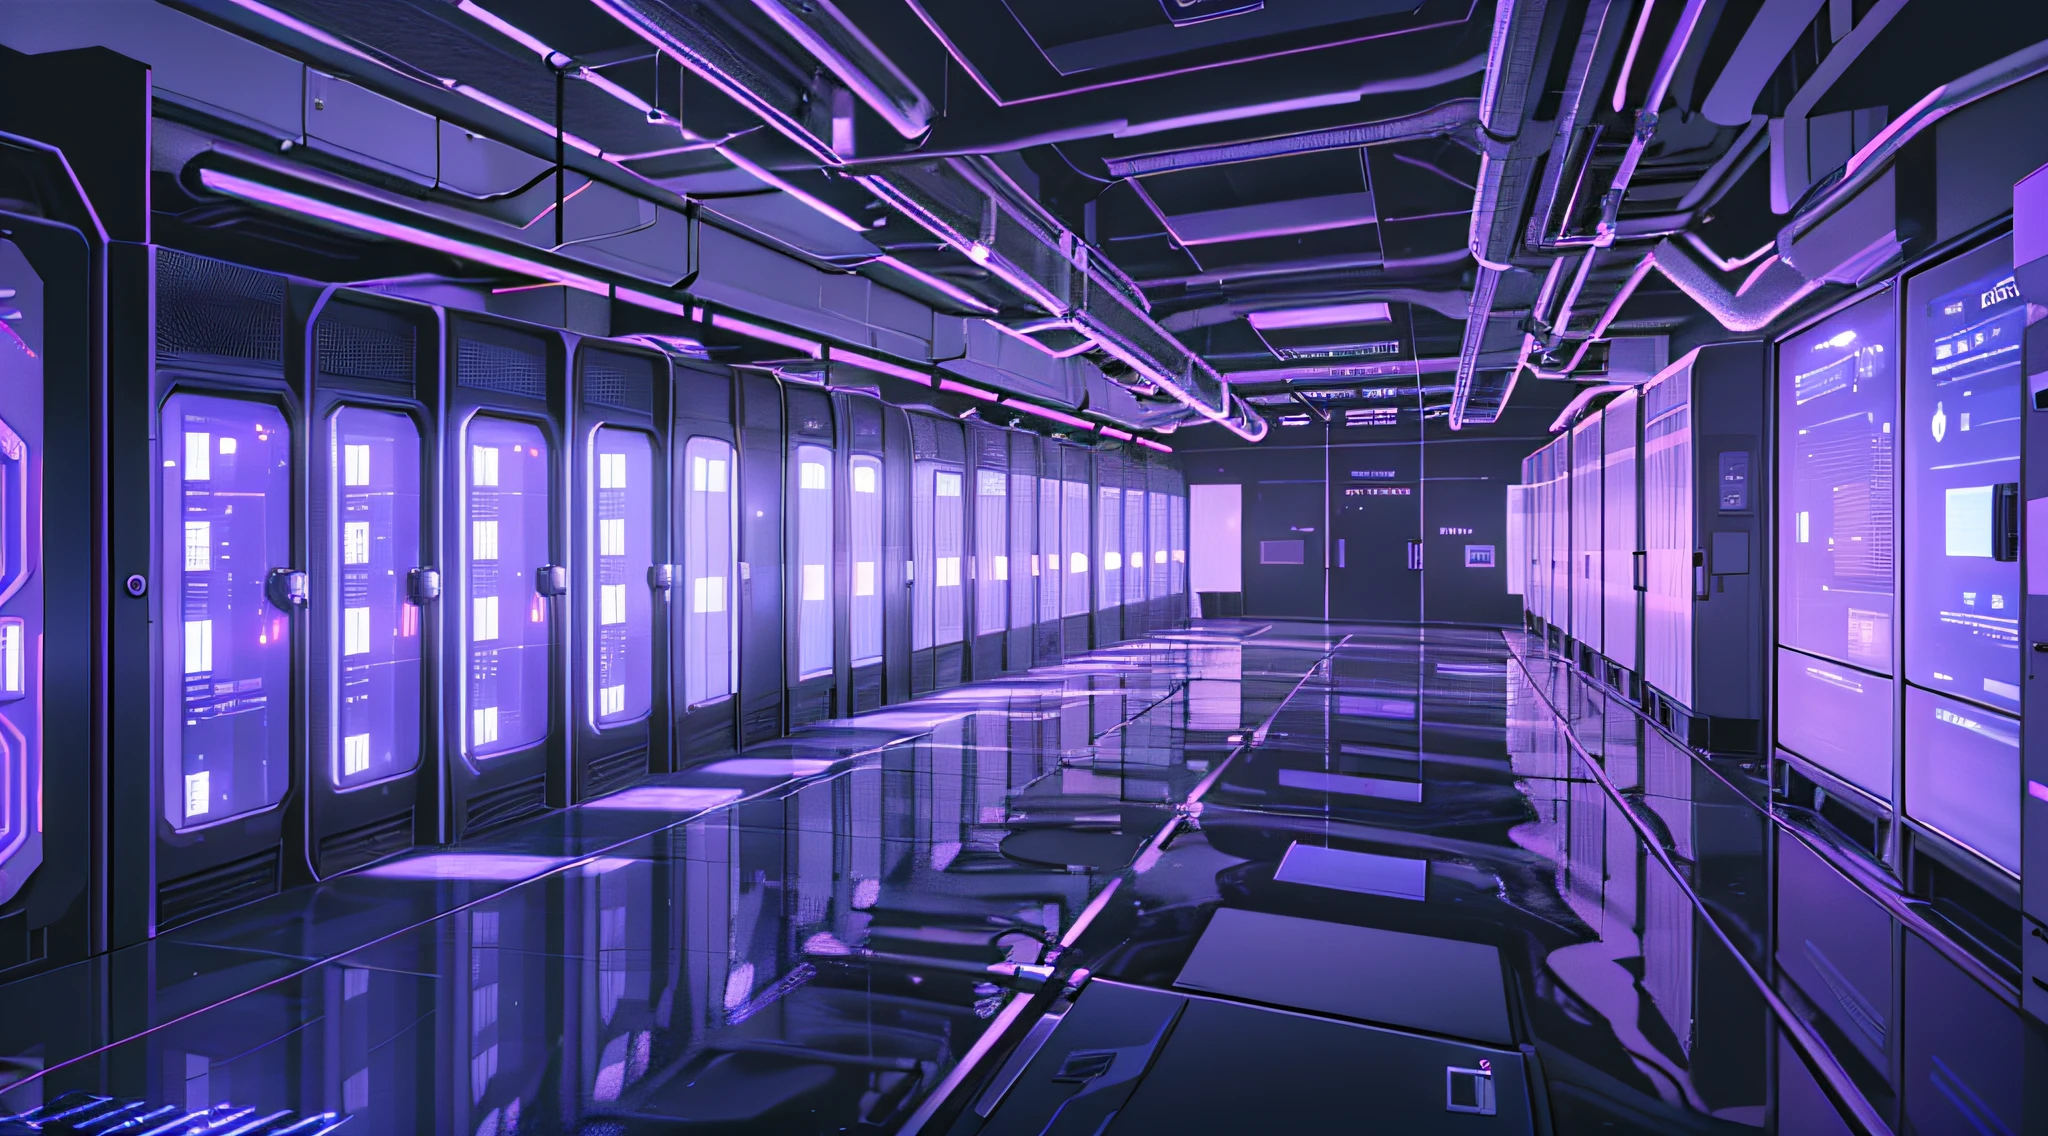 燈光昏暗的走廊上擺著一排排數據和電腦螢幕, 背景是數據伺服器機房, 侵入主機, 網路空間, 在現實的資料中心, 3840x2160, 3840 x 2160, 太空船走廊背景, 網路架構, 超現實的網路空間, 在詳細資料中心 --auto --s2 中